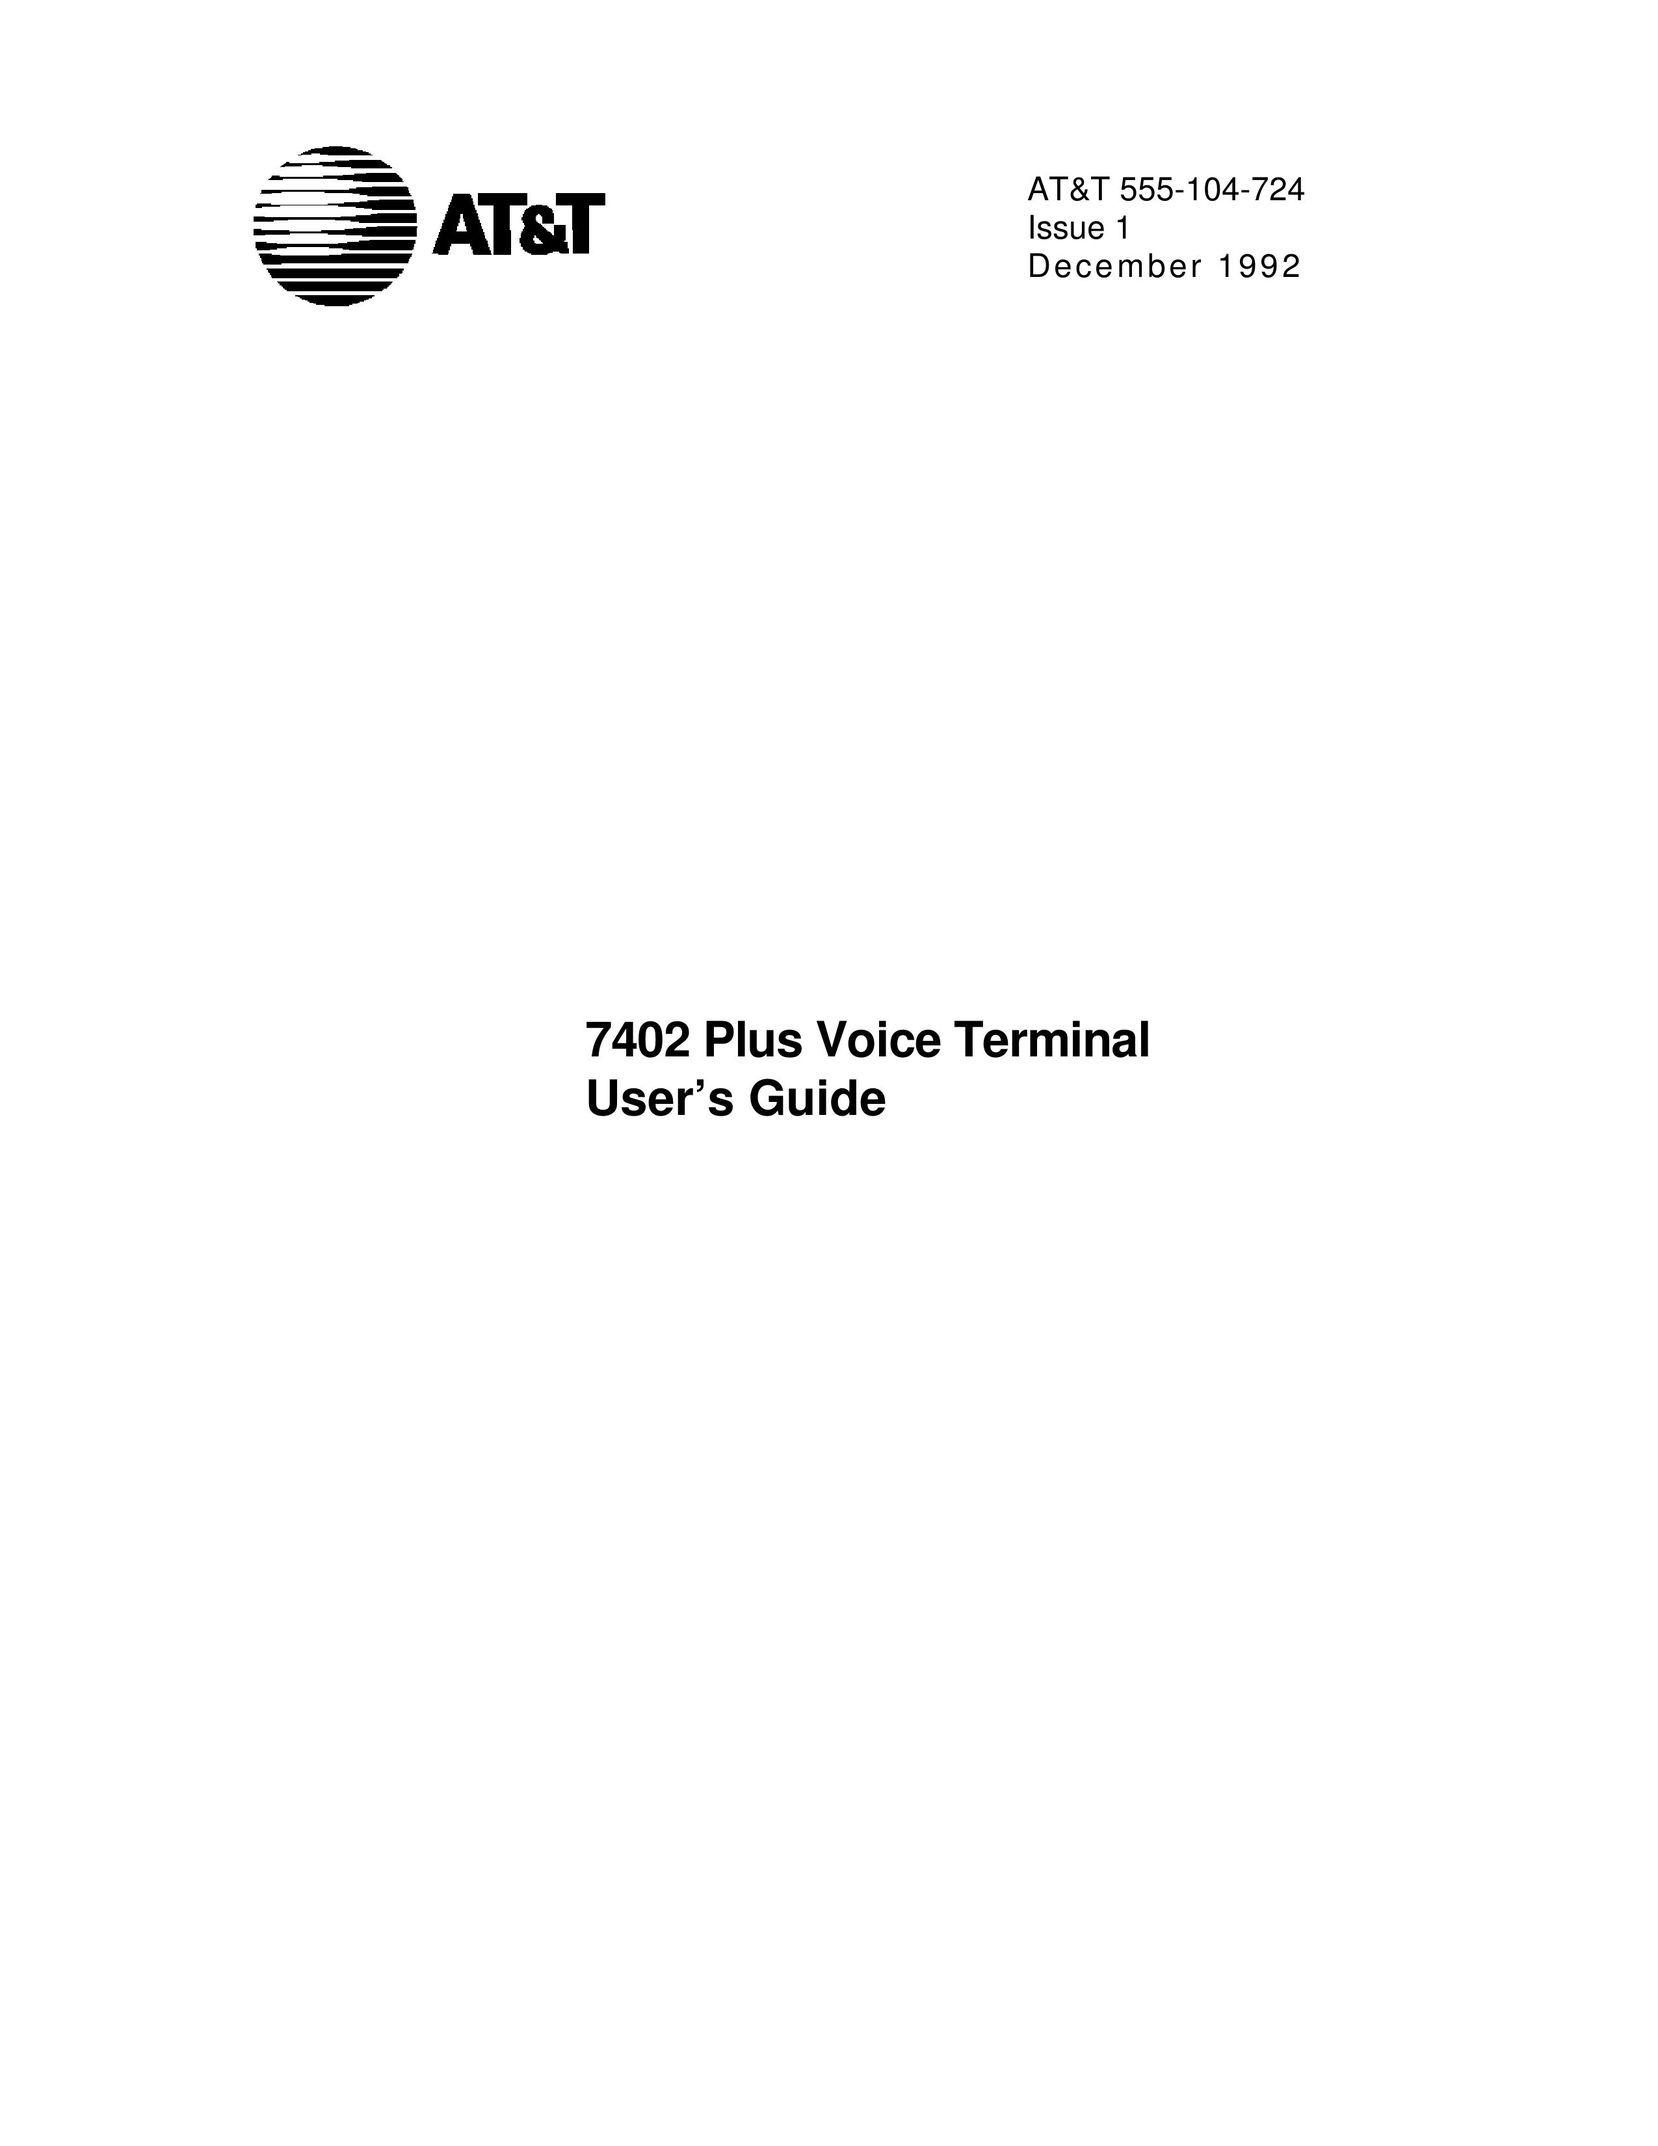 AT&T 7402 Telephone User Manual